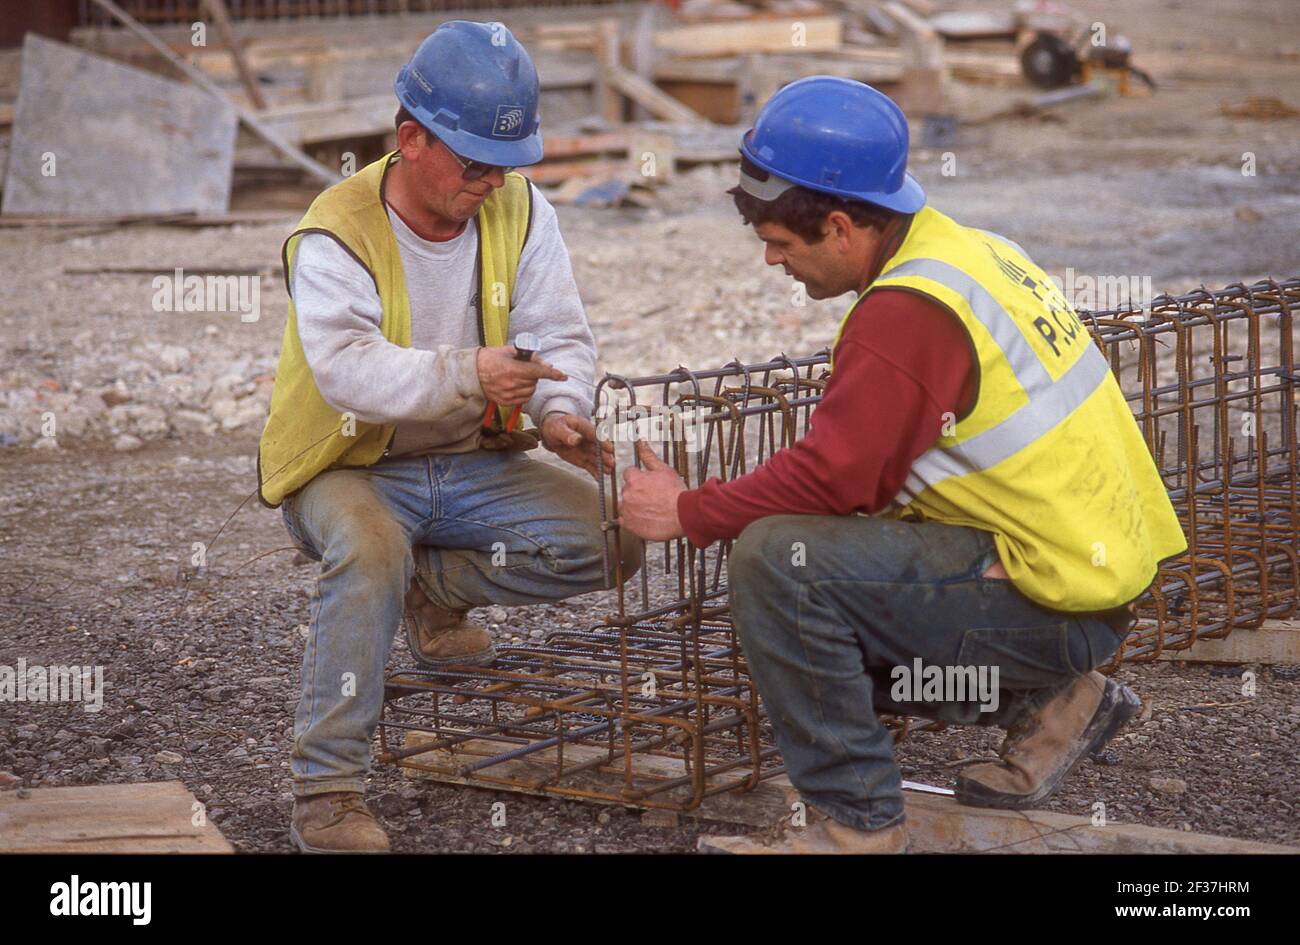 Ouvriers de la construction préparant des filets de renforcement en acier de béton, City of Westminster, Greater London, Angleterre, Royaume-Uni Banque D'Images